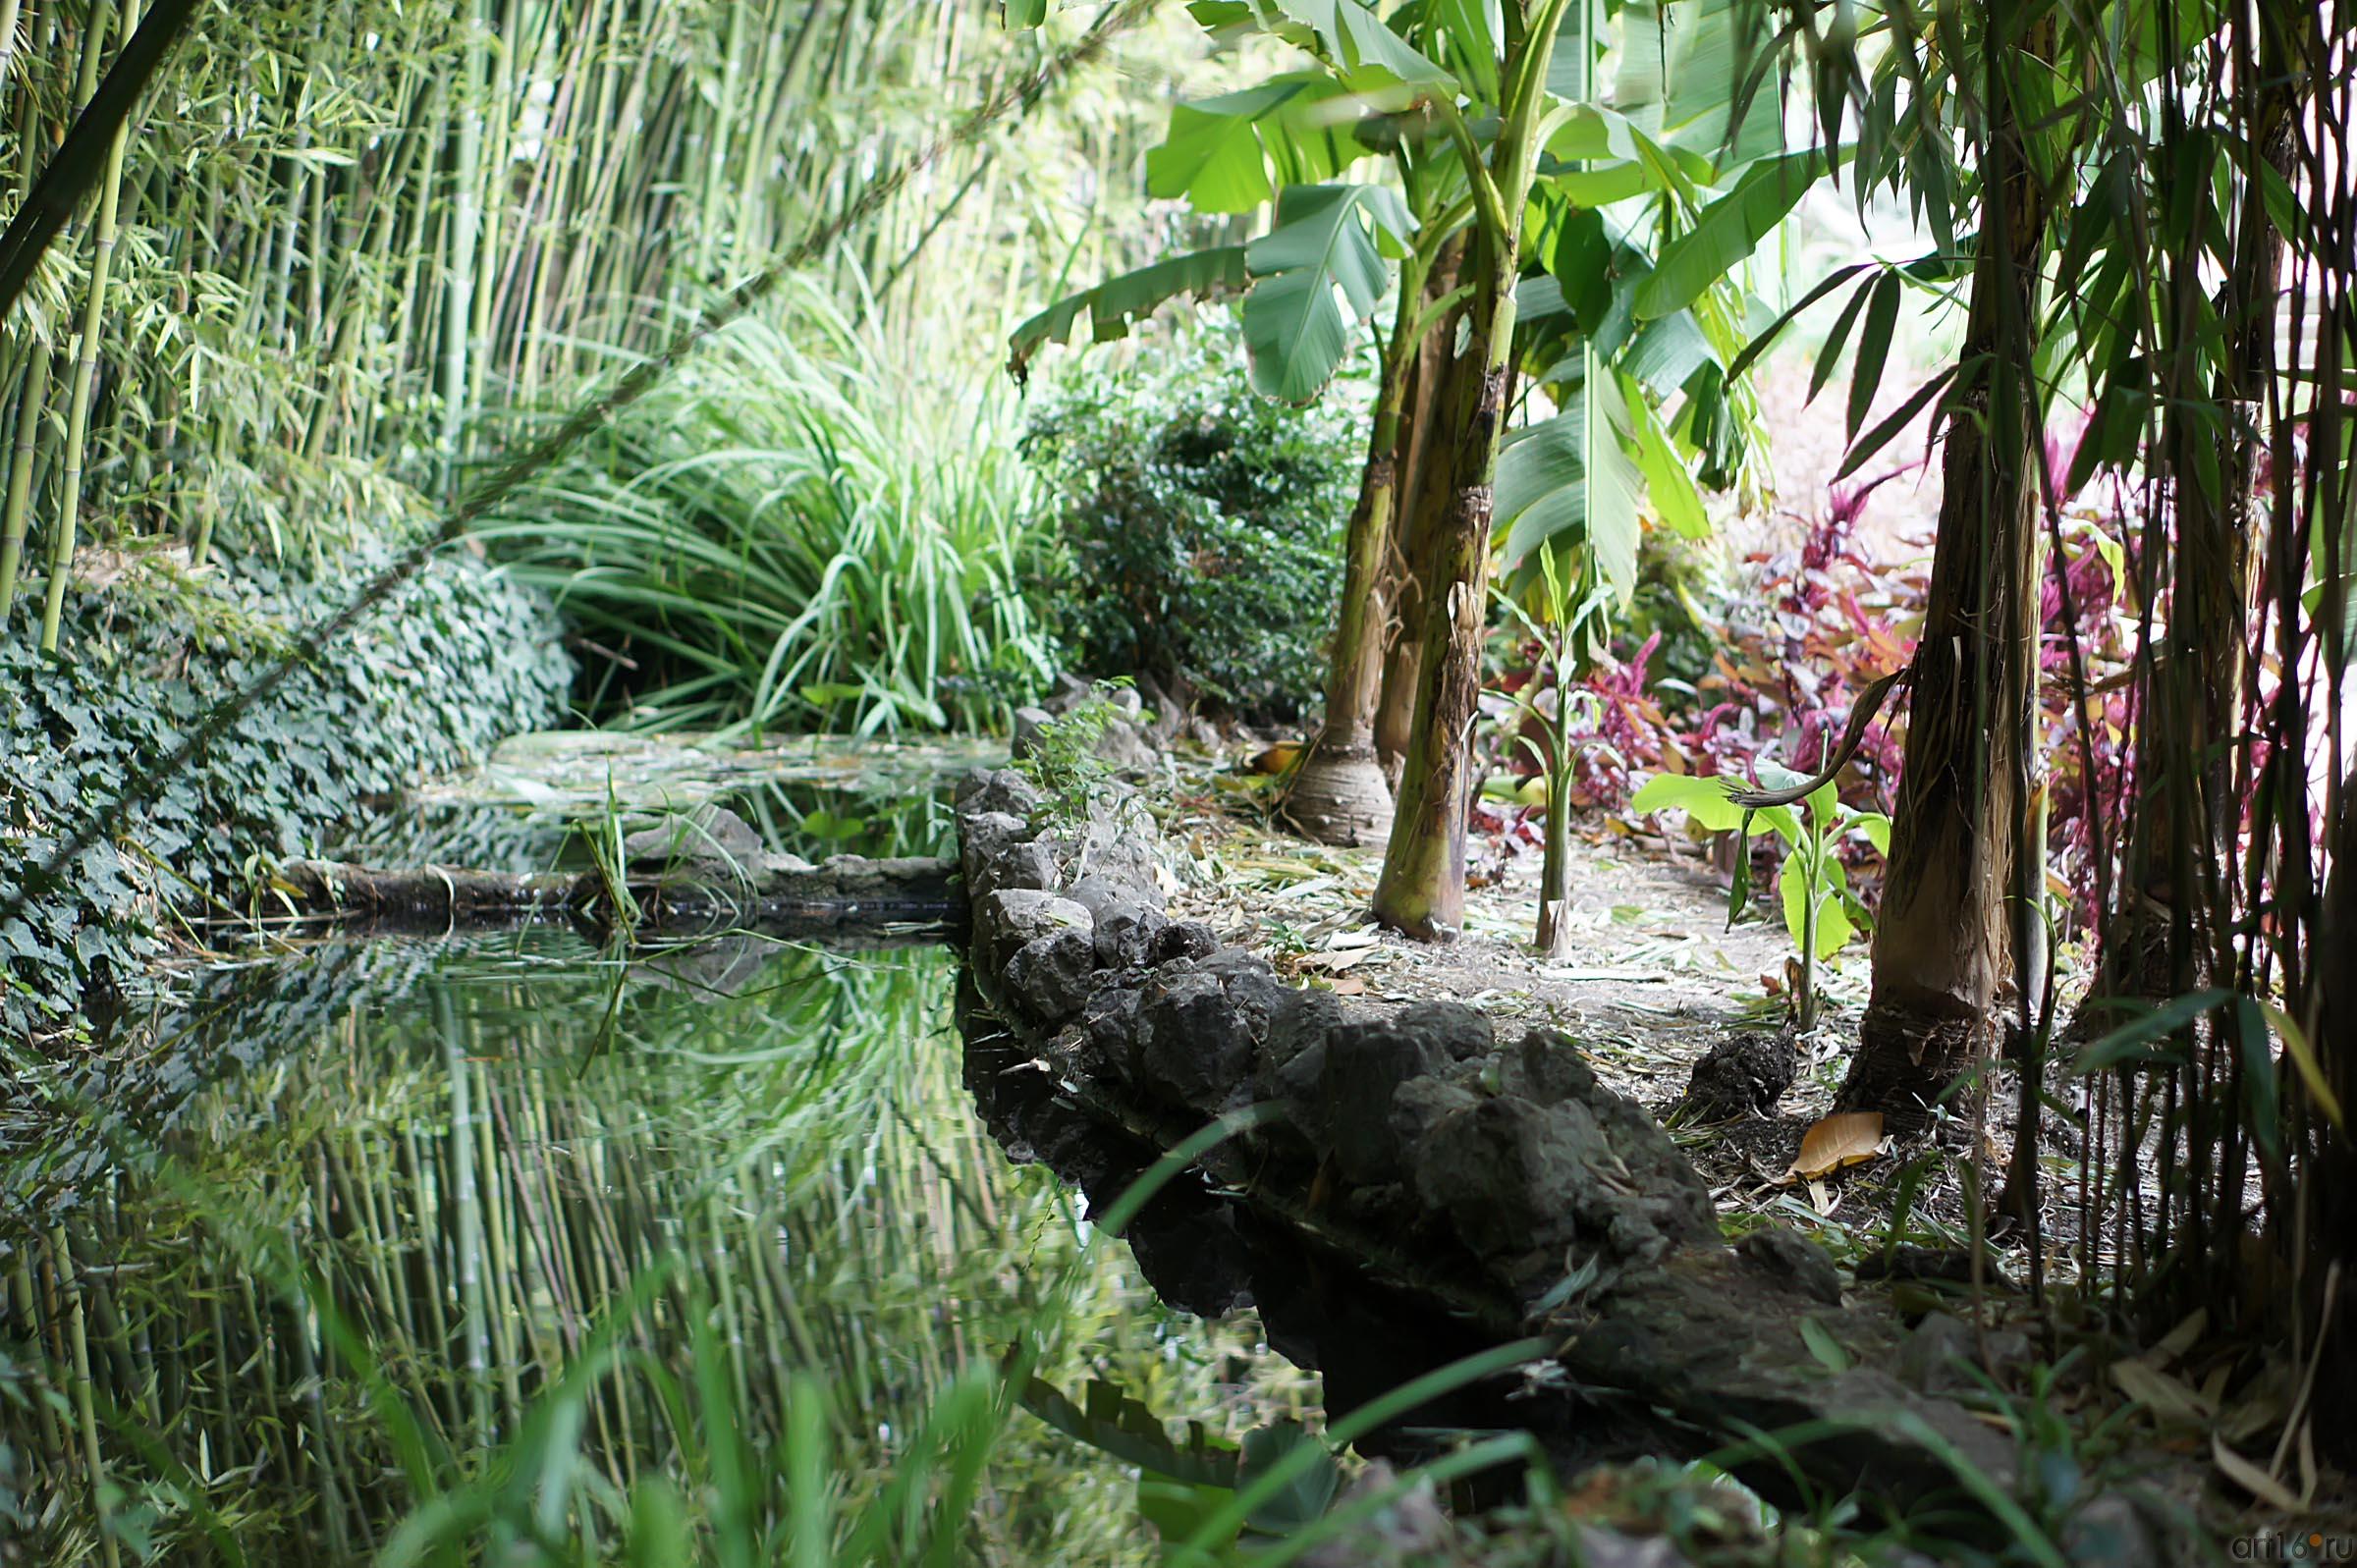 Никитский ботанический сад. Бамбуковая роща::Никитский ботанический сад